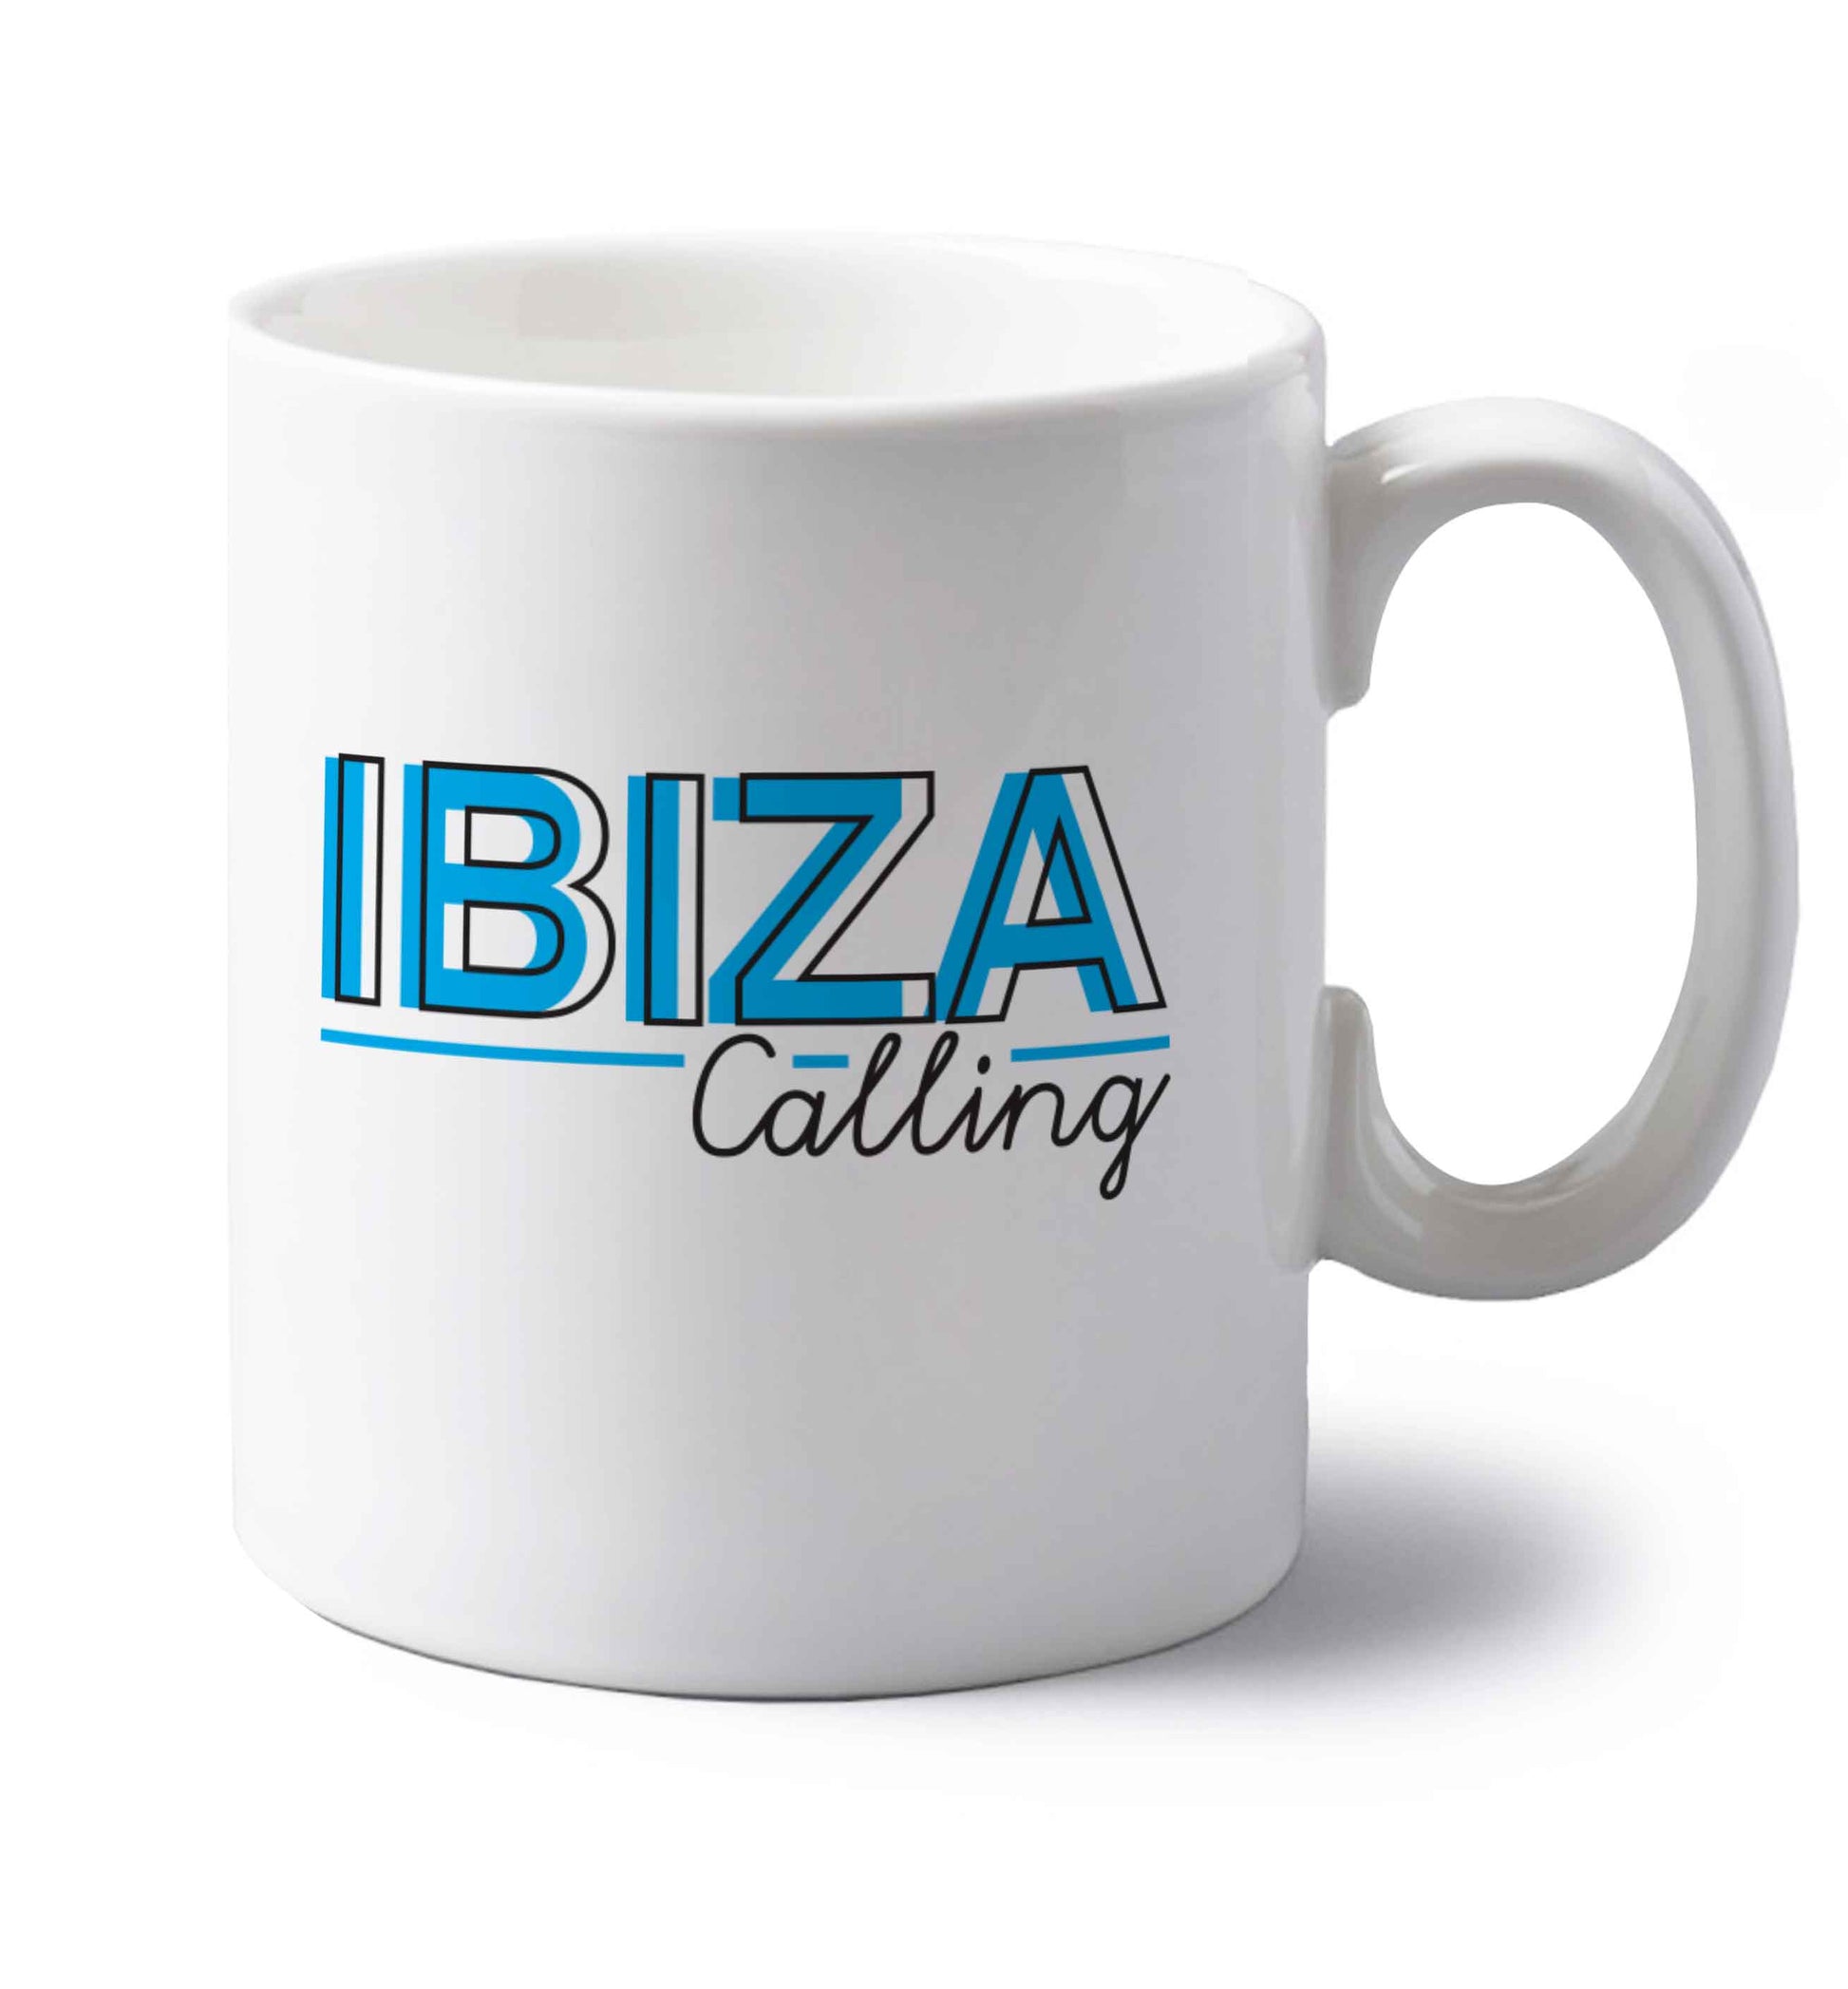 Ibiza calling left handed white ceramic mug 